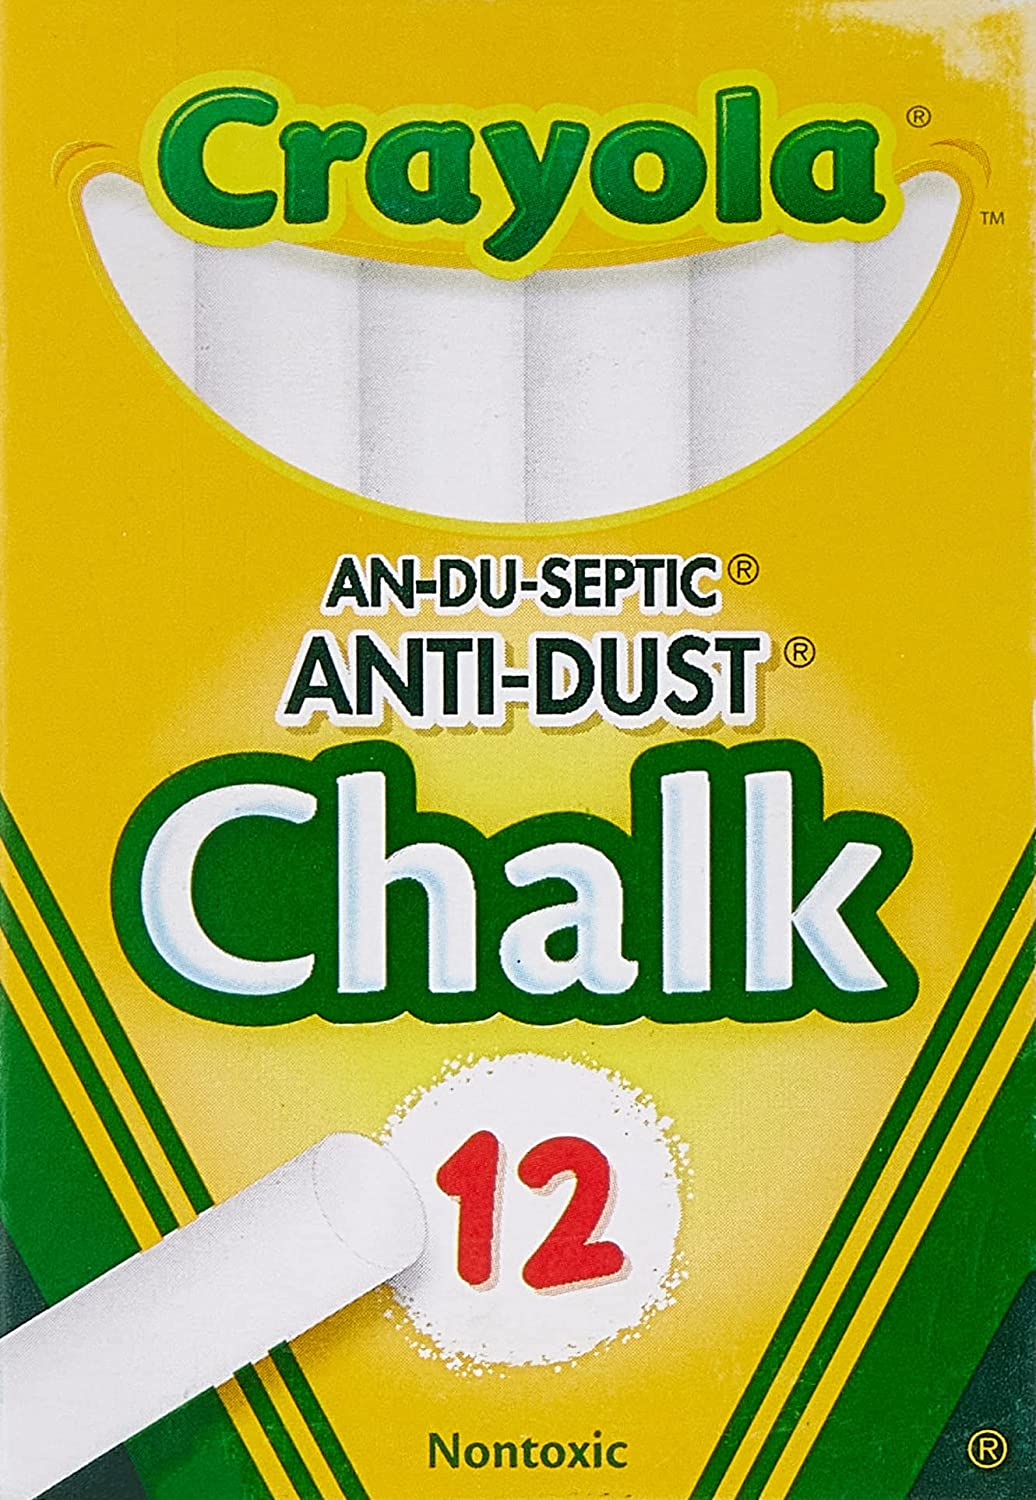 Crayola Chalk 12ct